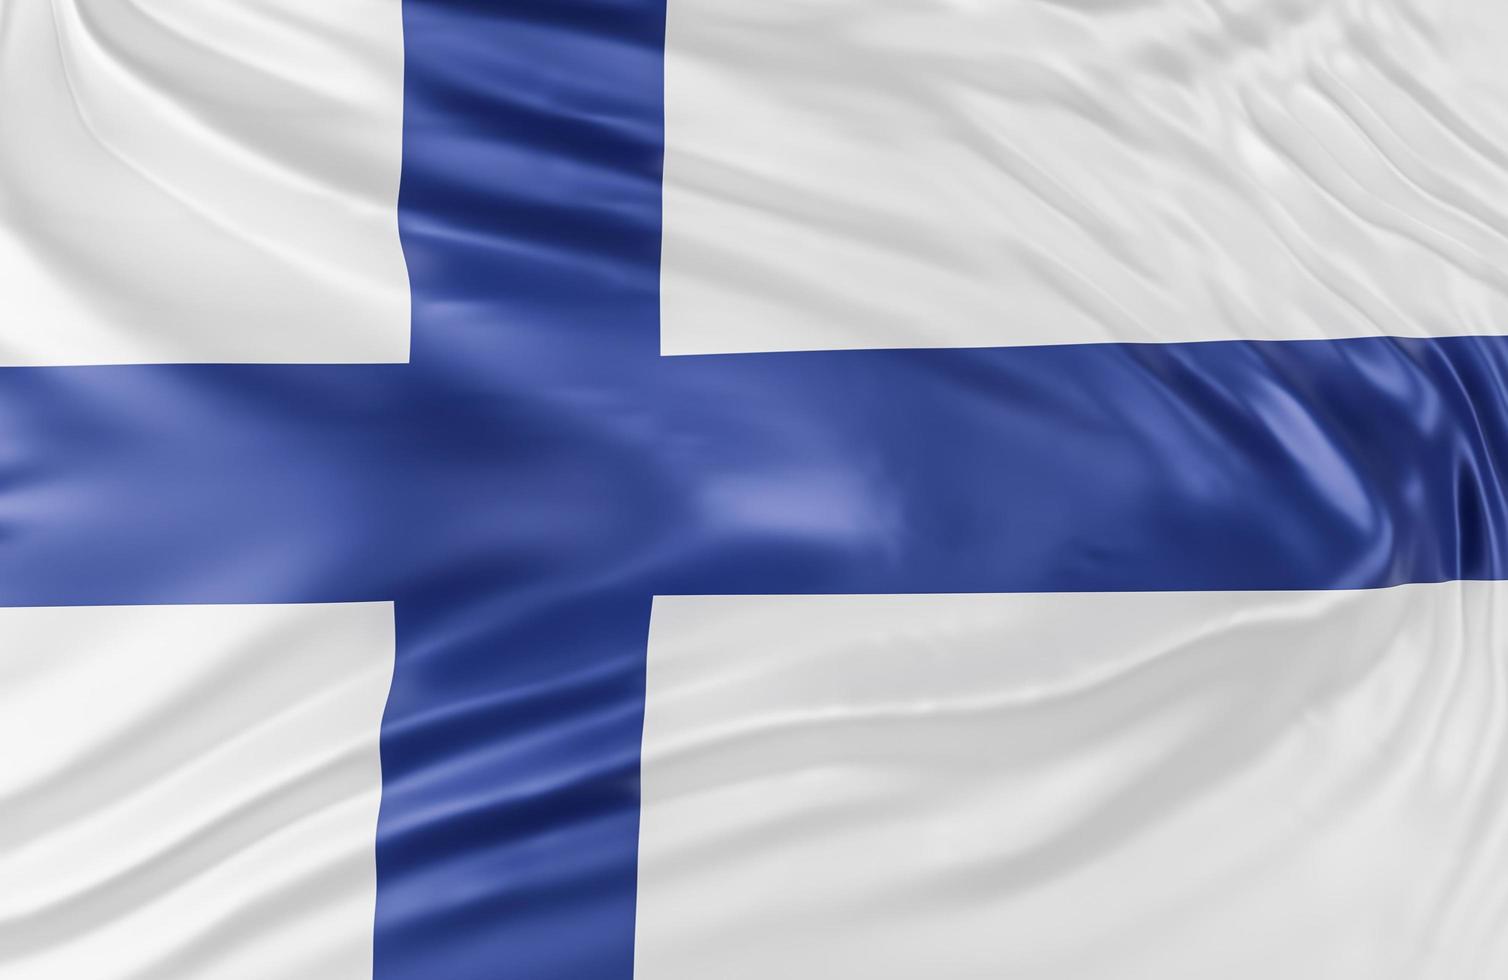 schöne finnische flaggenwelle nah oben auf fahnenhintergrund mit kopierraum.,3d-modell und illustration. foto